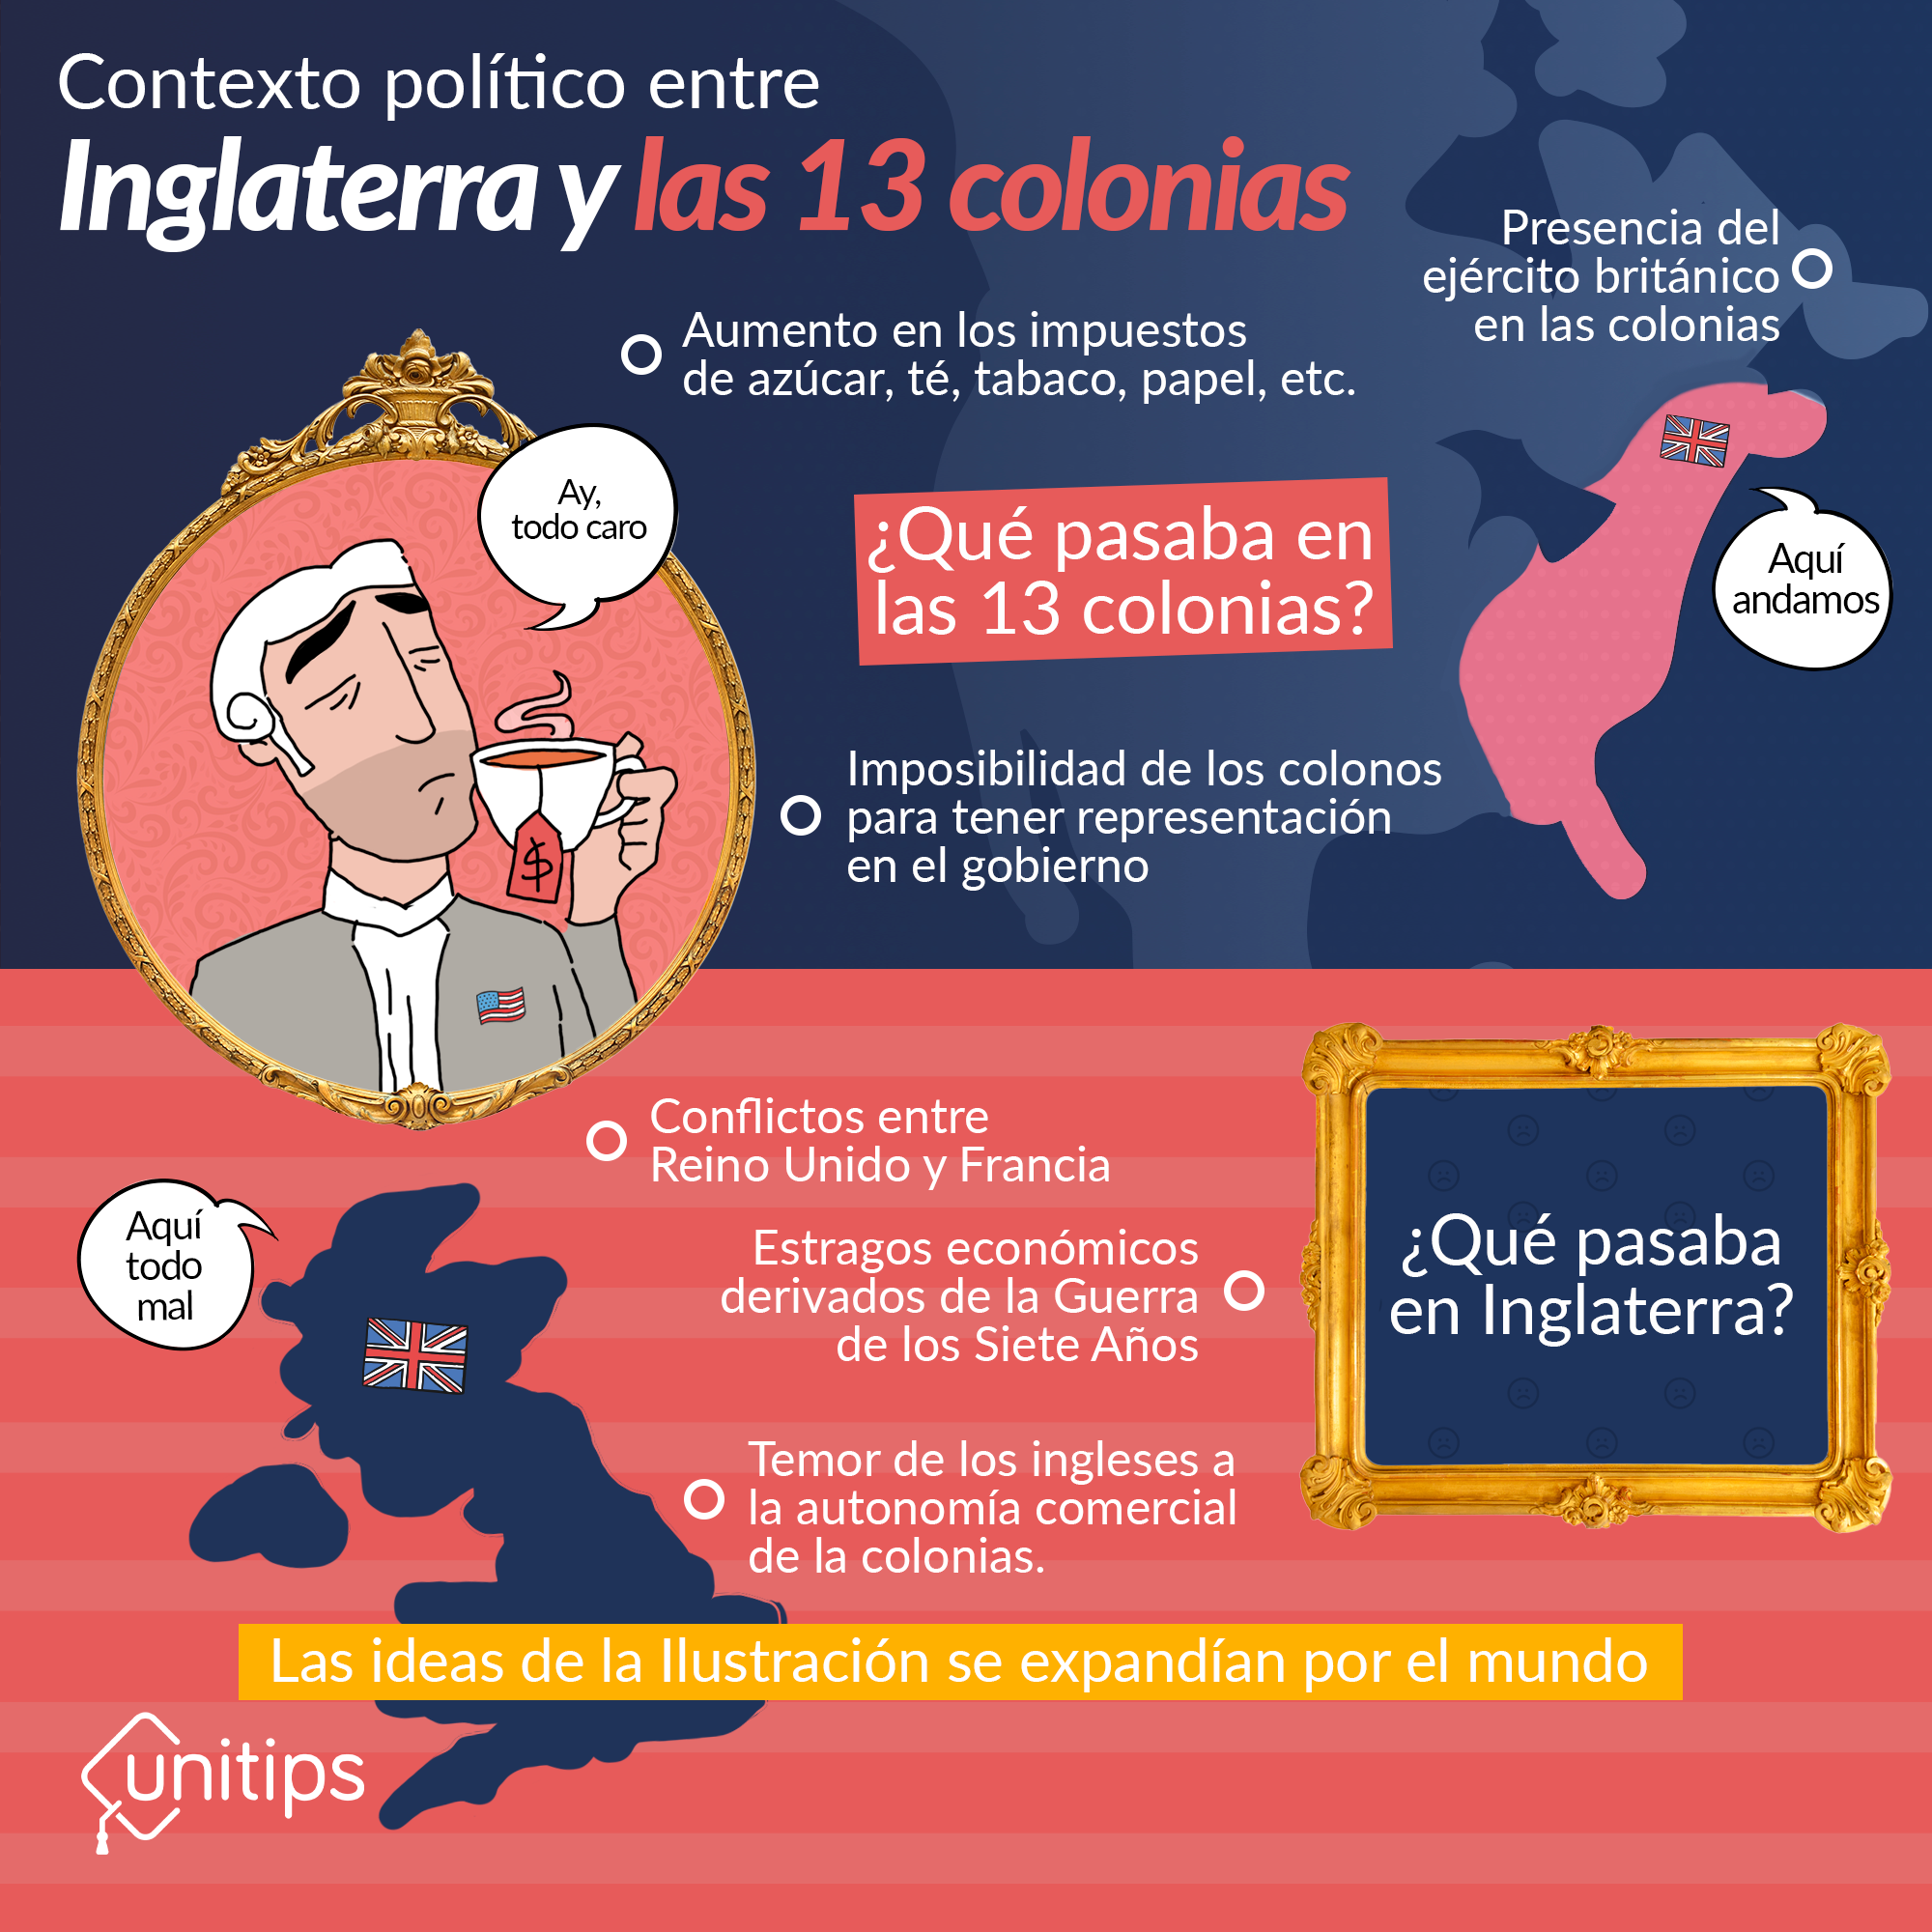 La Independencia las 13 colonias: causas y